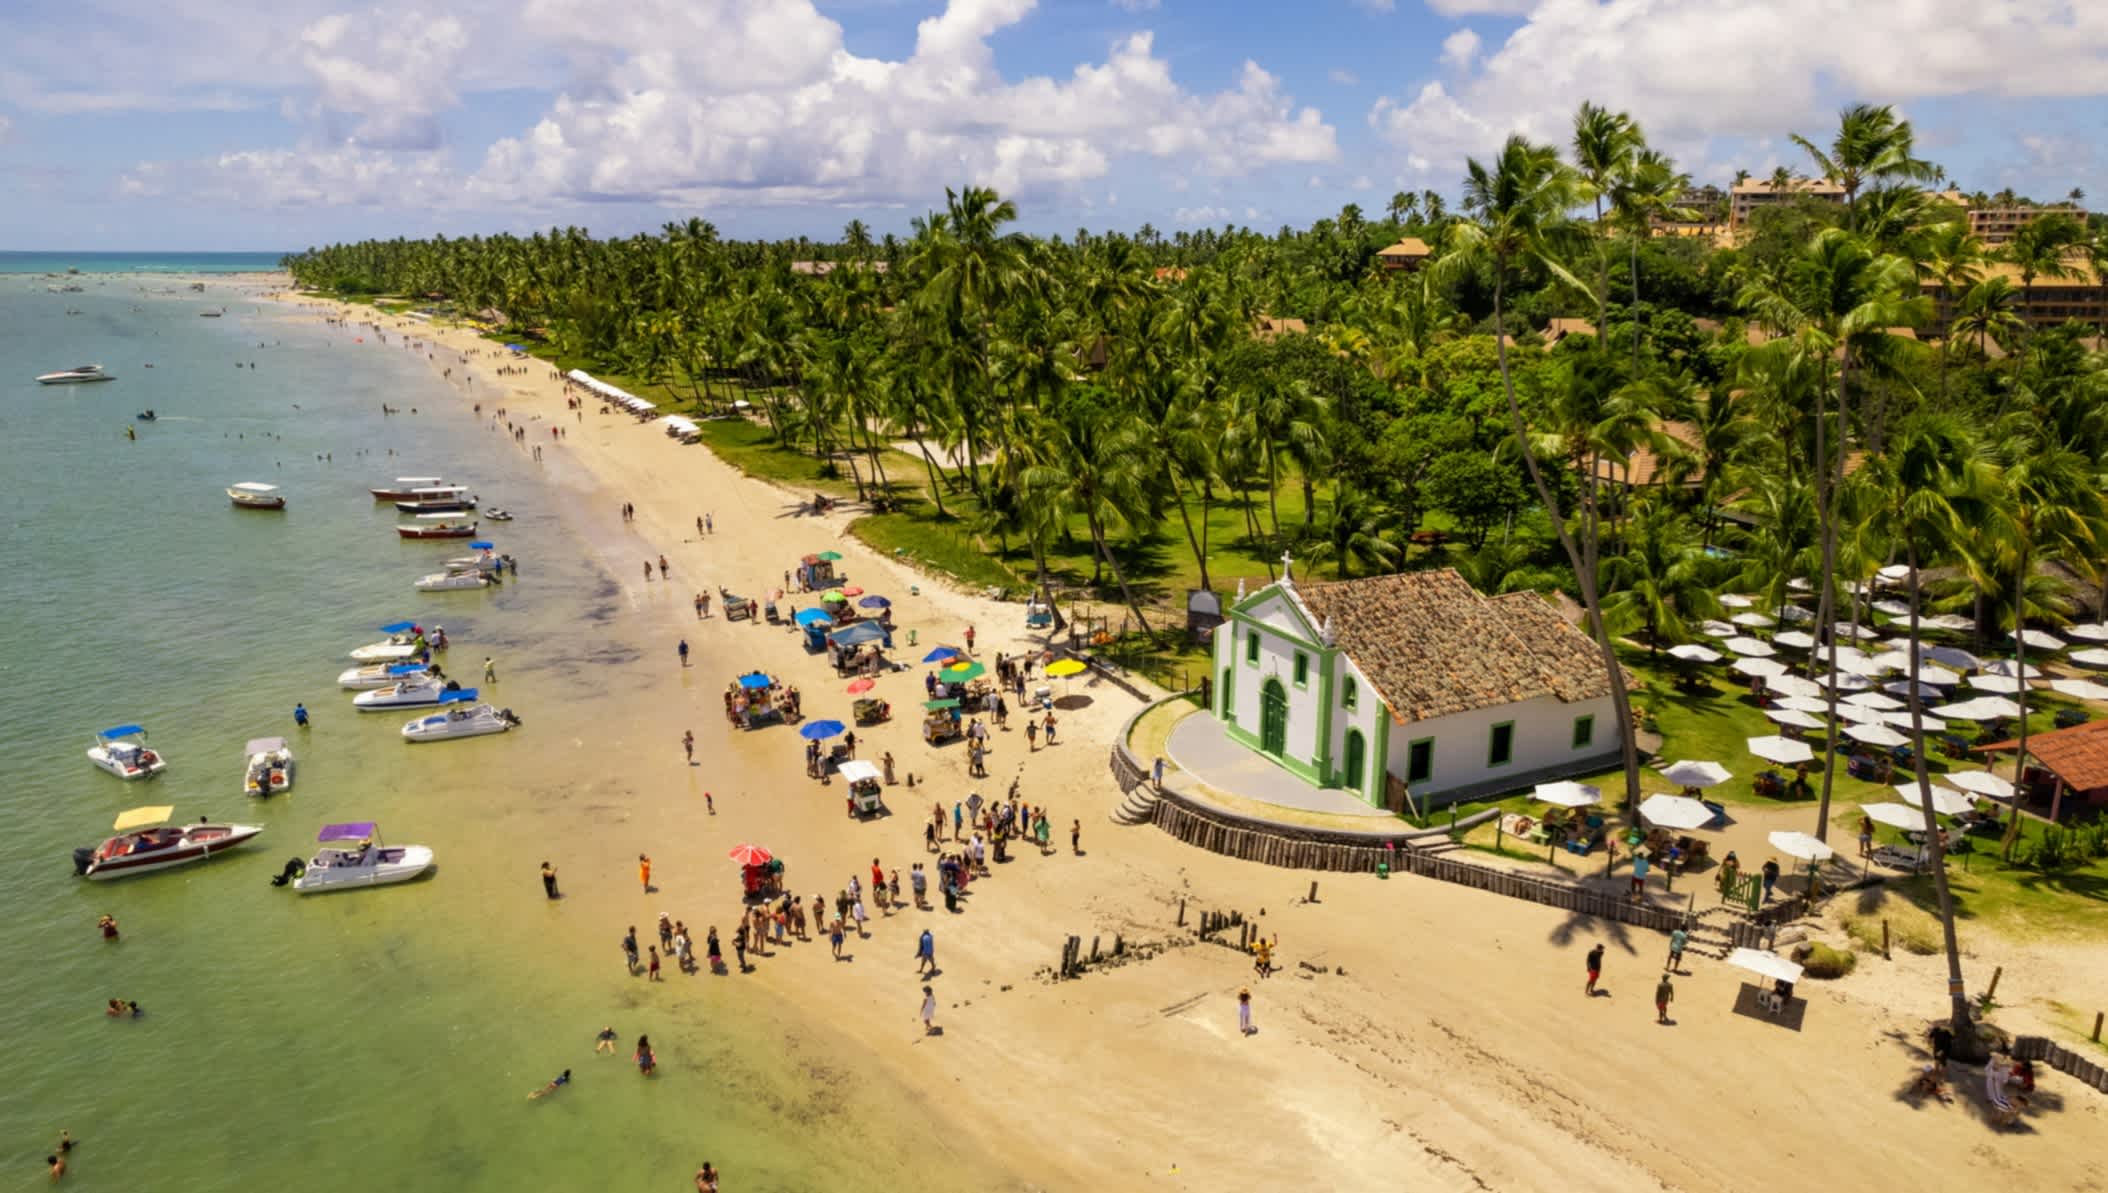 Petite église sur la plage de Praia dos Carneiros à Tamandaré, Pernambuco, Brésil

